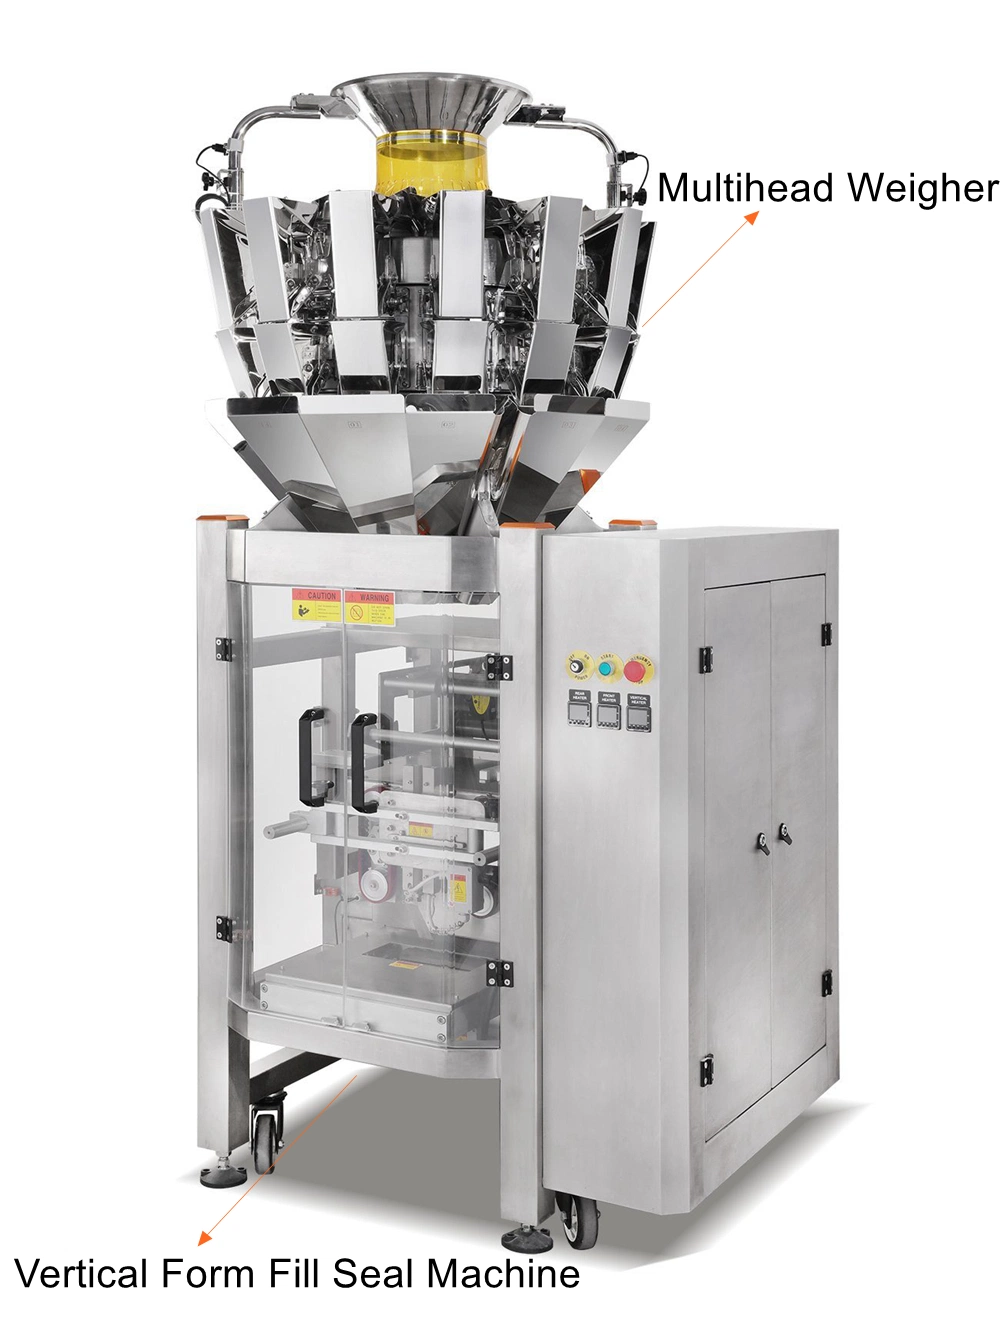 Auténticos 10 Jefes automático de 14 Jefes combinación escala Weigher multiterminal Máquina de embalaje de llenado de granos, hortalizas y la alimentación